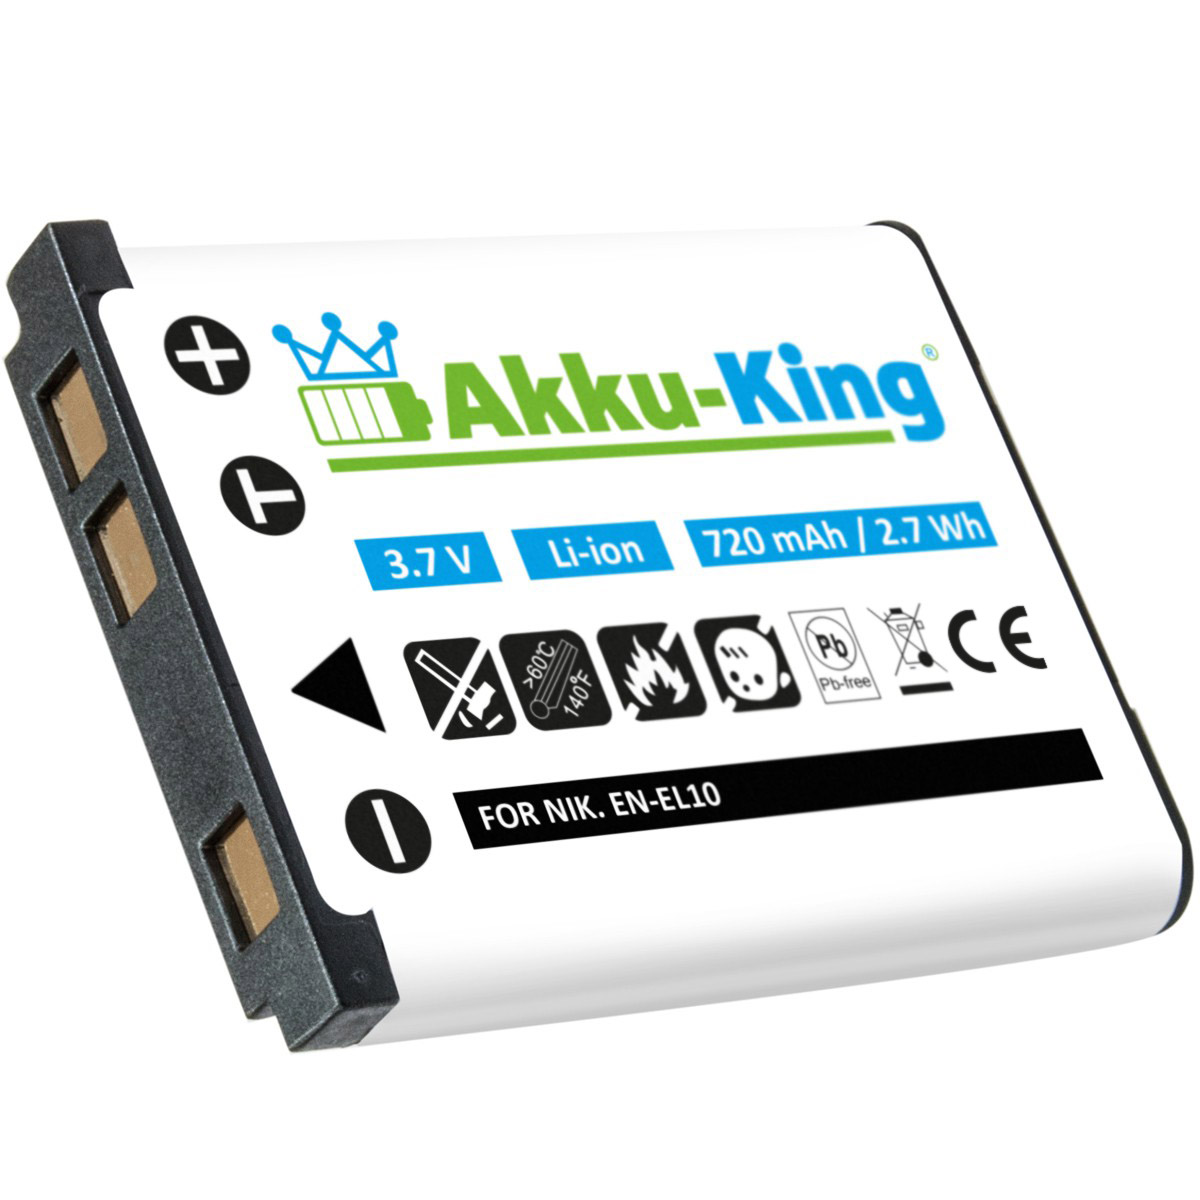 D-Li108 kompatibel Li-Ion AKKU-KING 3.7 Akku Volt, 720mAh Kamera-Akku, mit Pentax